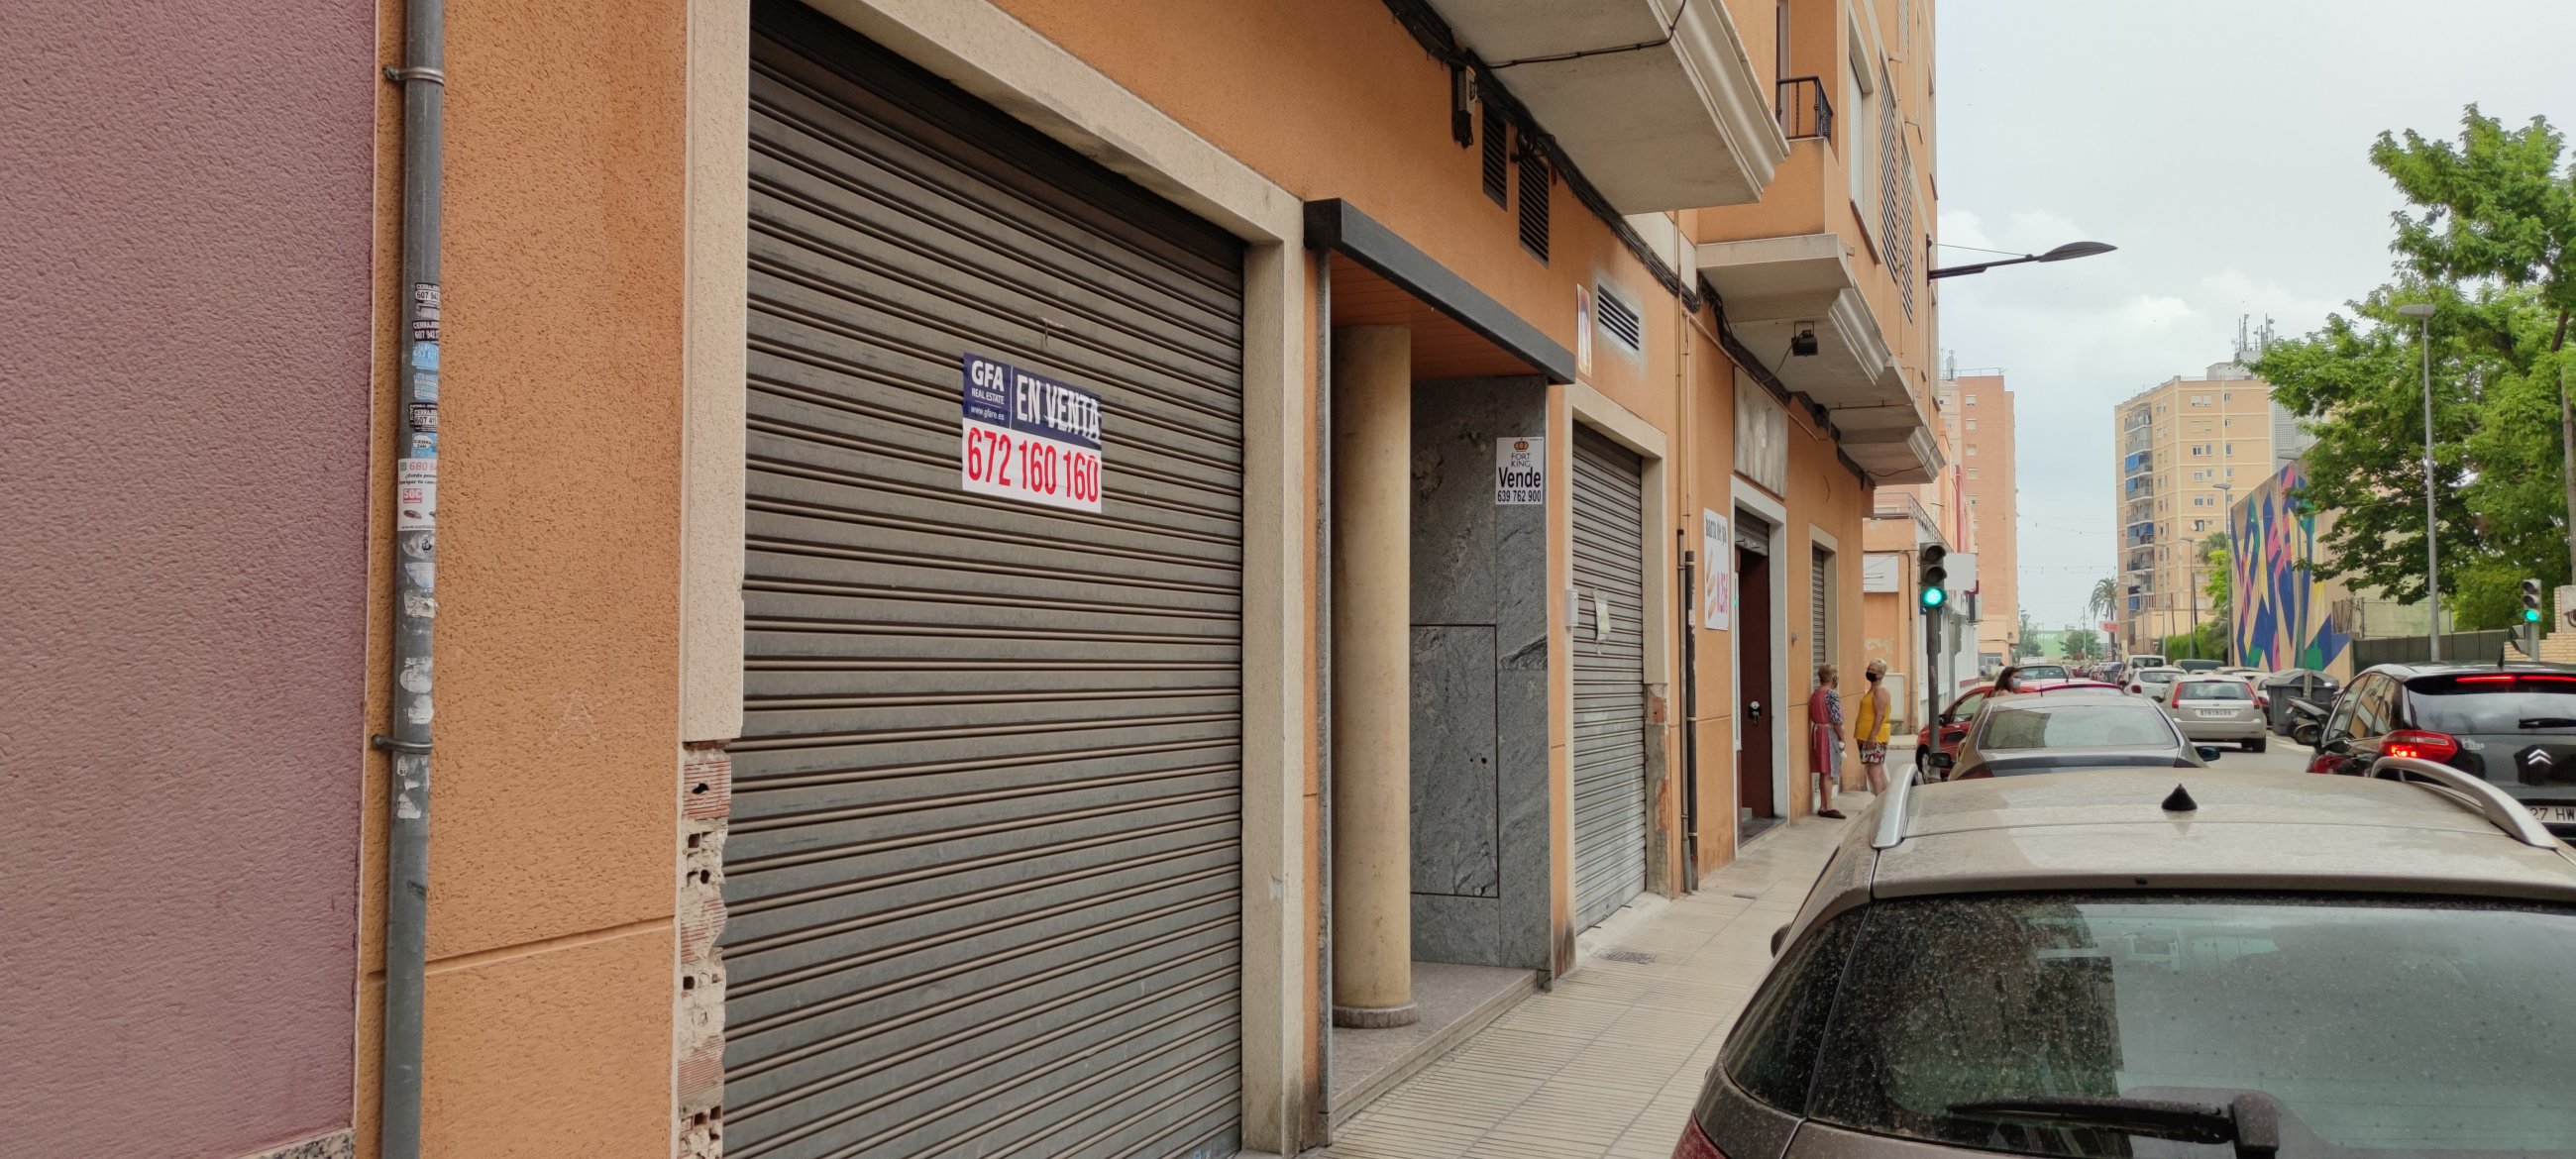 Local en venta en Alcira, Valencia